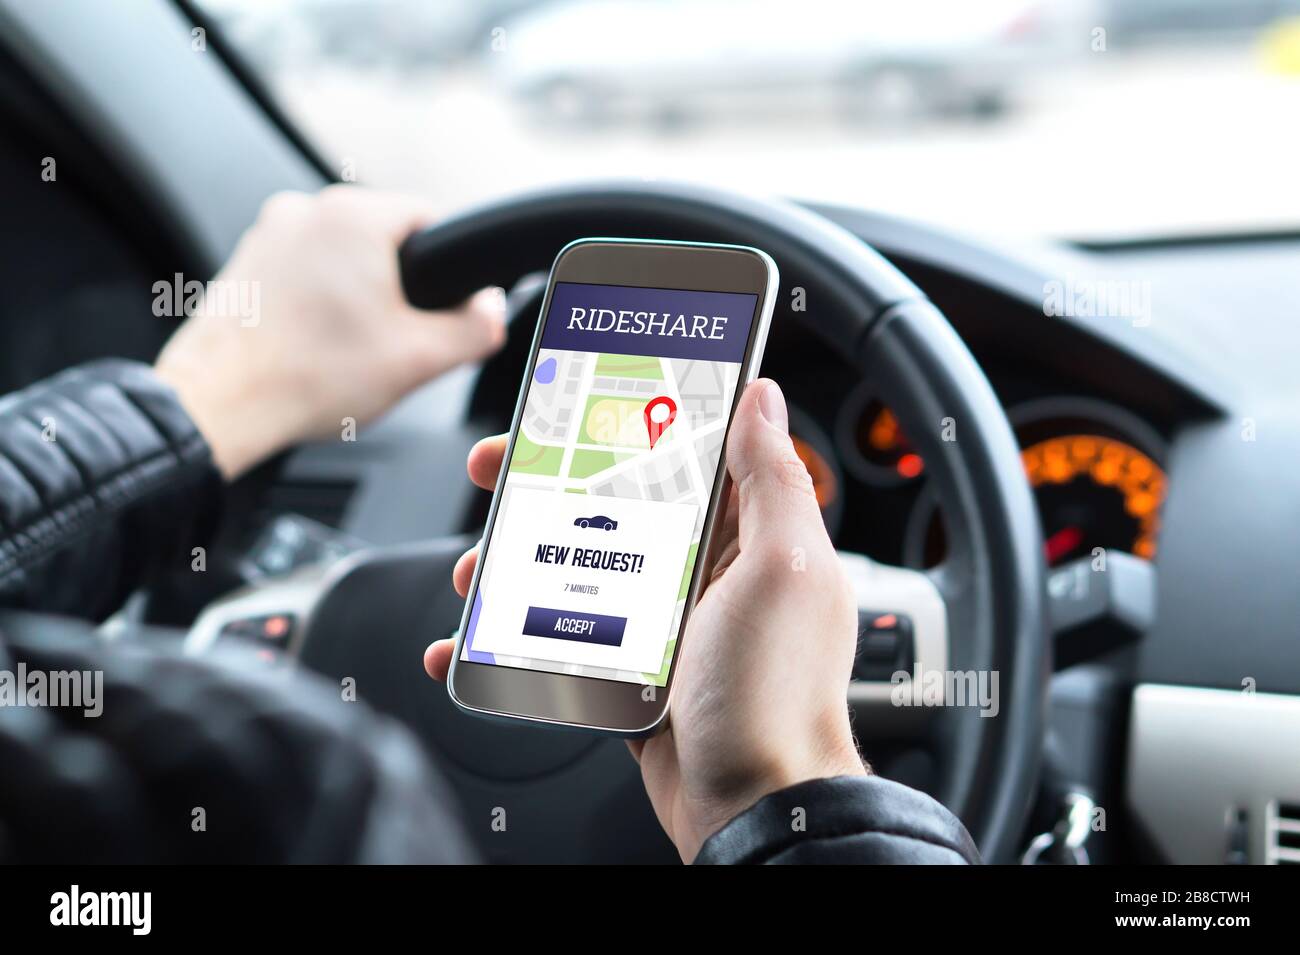 Guida il conducente in auto utilizzando l'app rideshare sul telefono cellulare. Nuova richiesta di taxi dal cliente nell'applicazione smartphone. Foto Stock